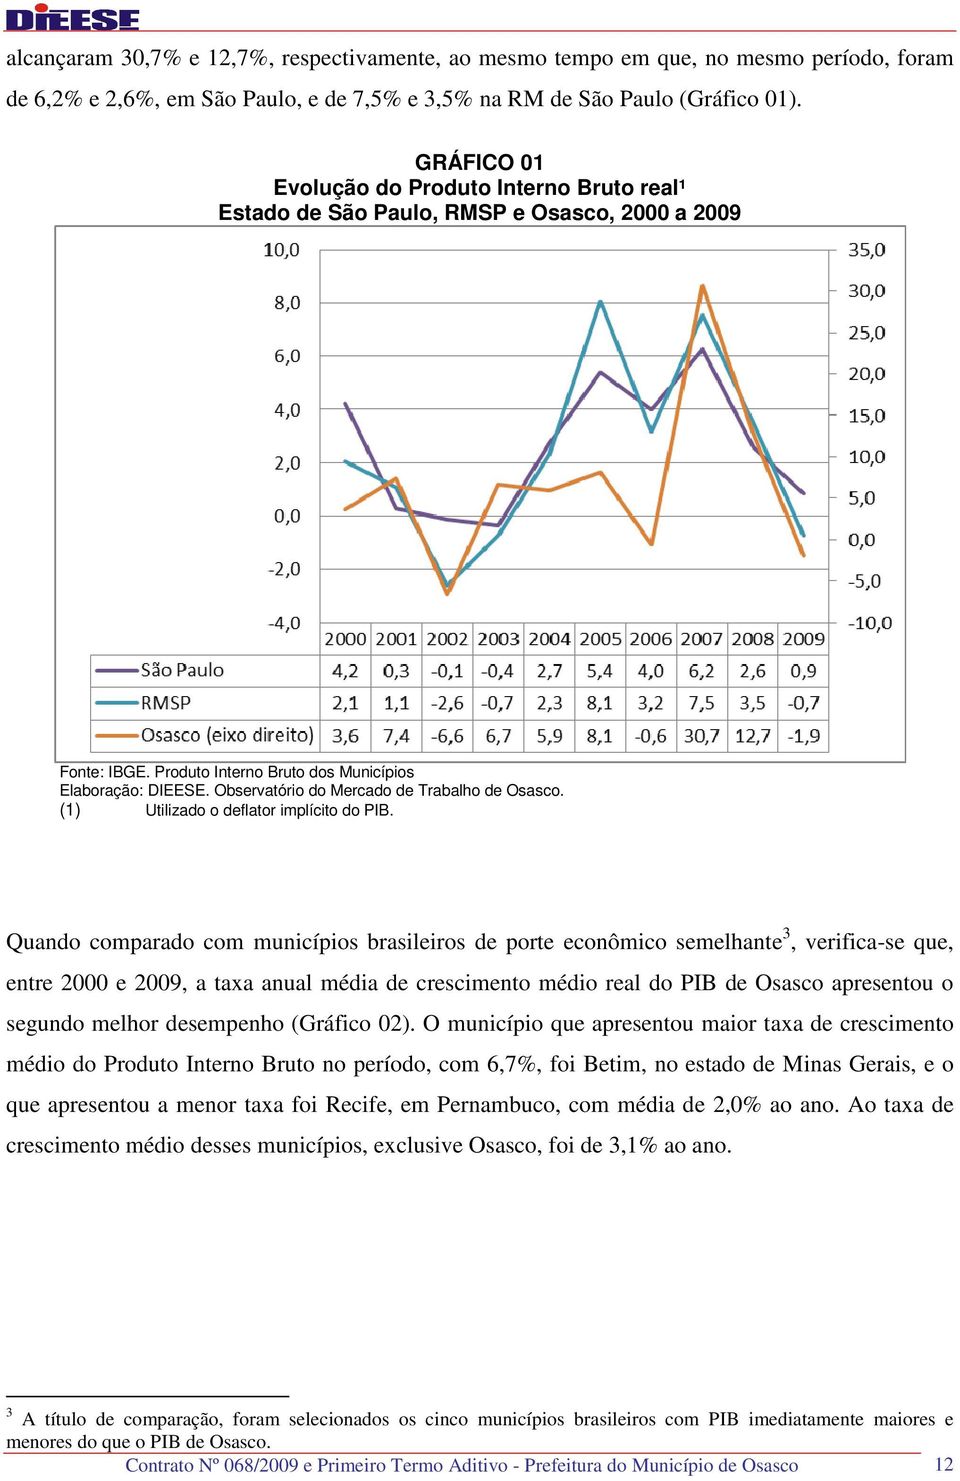 Quando comparado com municípios brasileiros de porte econômico semelhante 3, verifica-se que, entre 2000 e 2009, a taxa anual média de crescimento médio real do PIB de Osasco apresentou o segundo